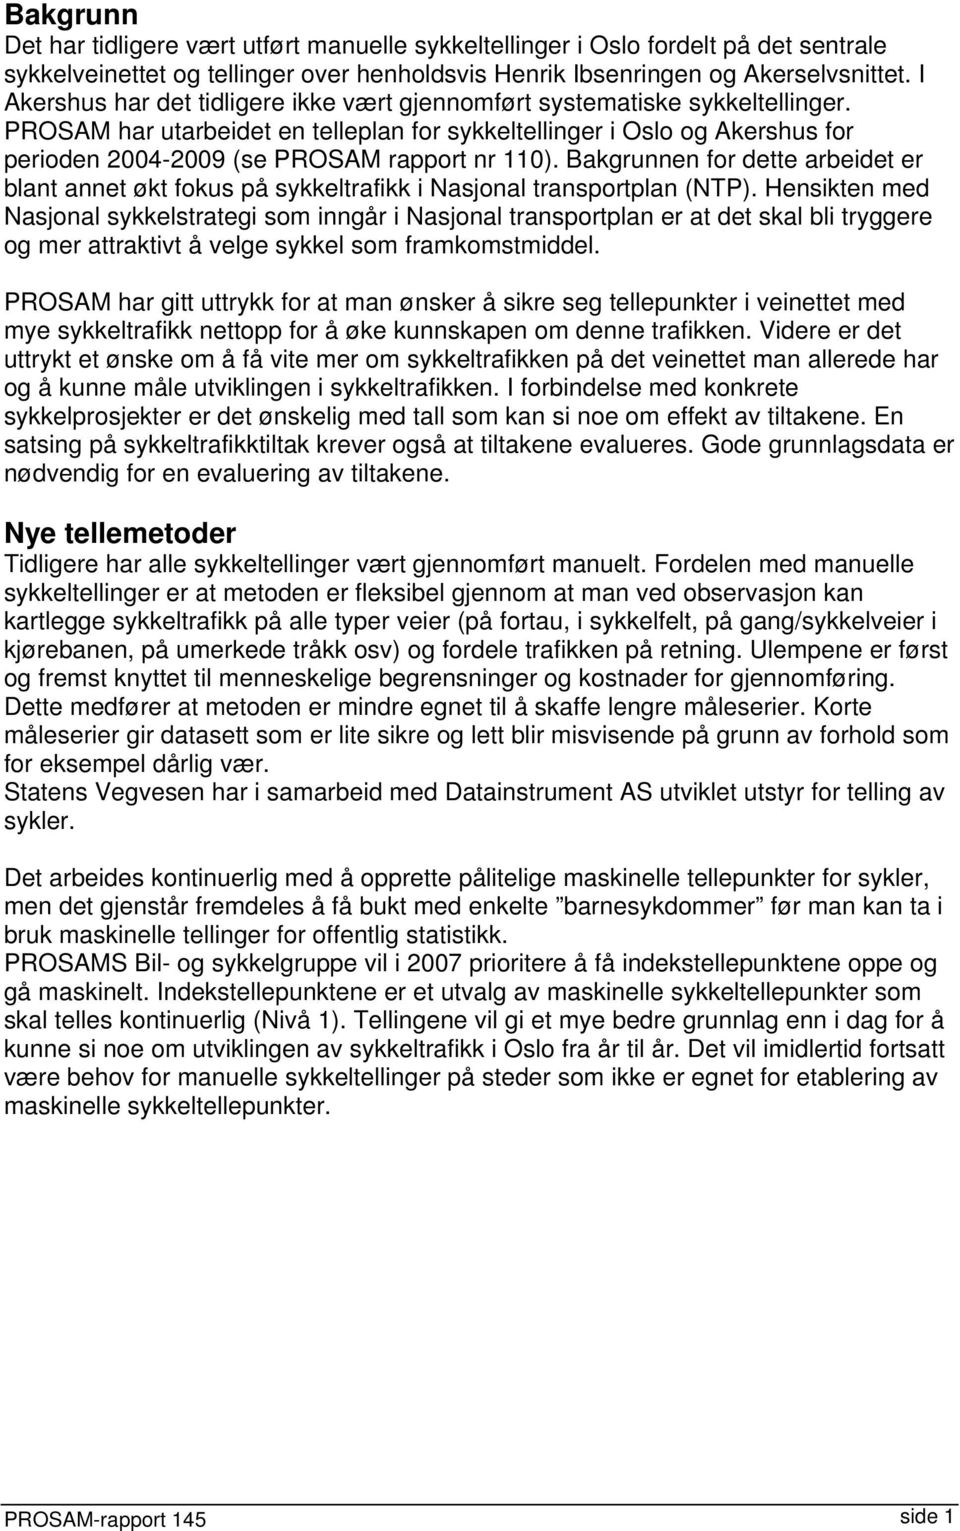 PROSAM har utarbeidet en telleplan for sykkeltellinger i Oslo og Akershus for perioden 2004-2009 (se PROSAM rapport nr 110).